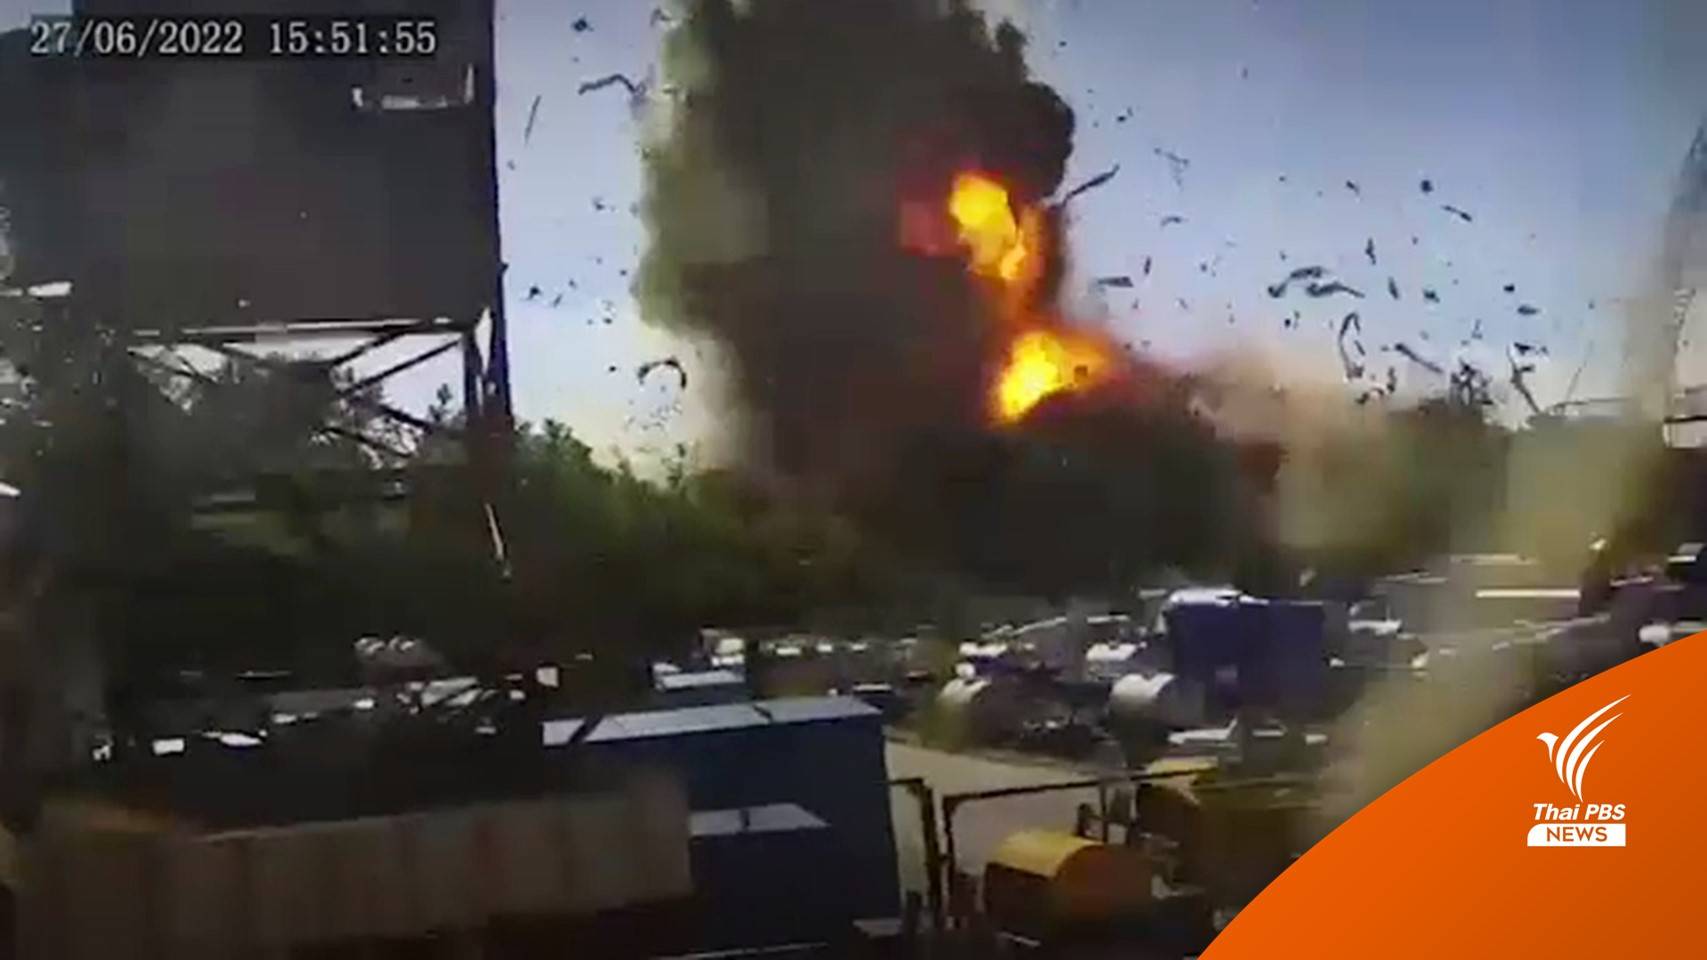 นาทีโจมตี! รัสเซียยิงจรวดถล่มห้างในยูเครน พลเรือนวิ่งหนีตาย